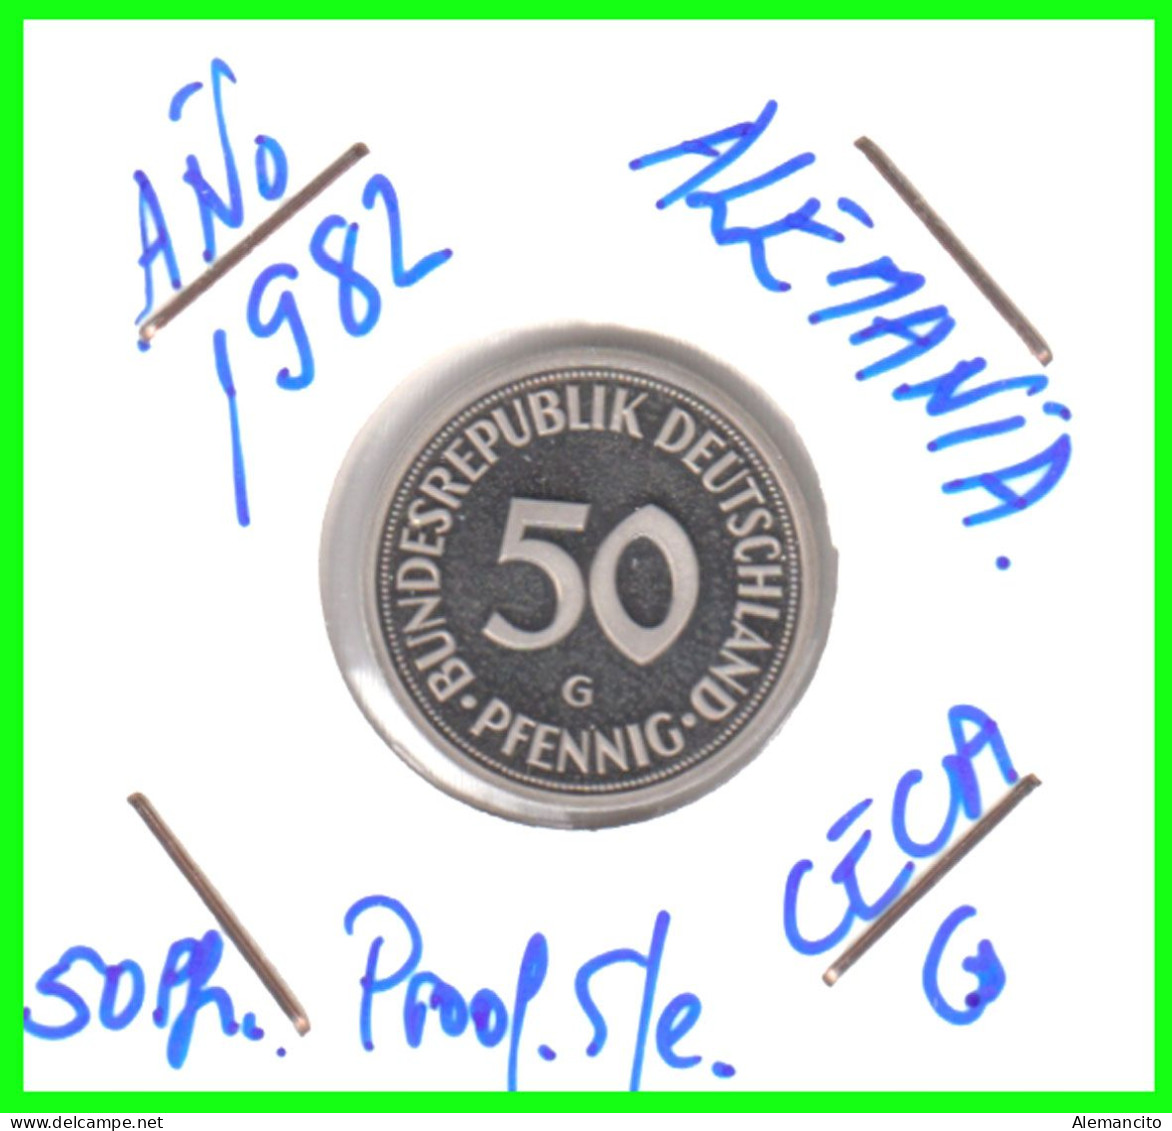 ALEMANIA -DEUTSCHLAND - GERMANY-MONEDA DE LA REPUBLICA FEDERAL DE ALEMANIA DE 50 Pfn. - DEL AÑO 1982-CECA- G - KARLRUHE - 50 Pfennig